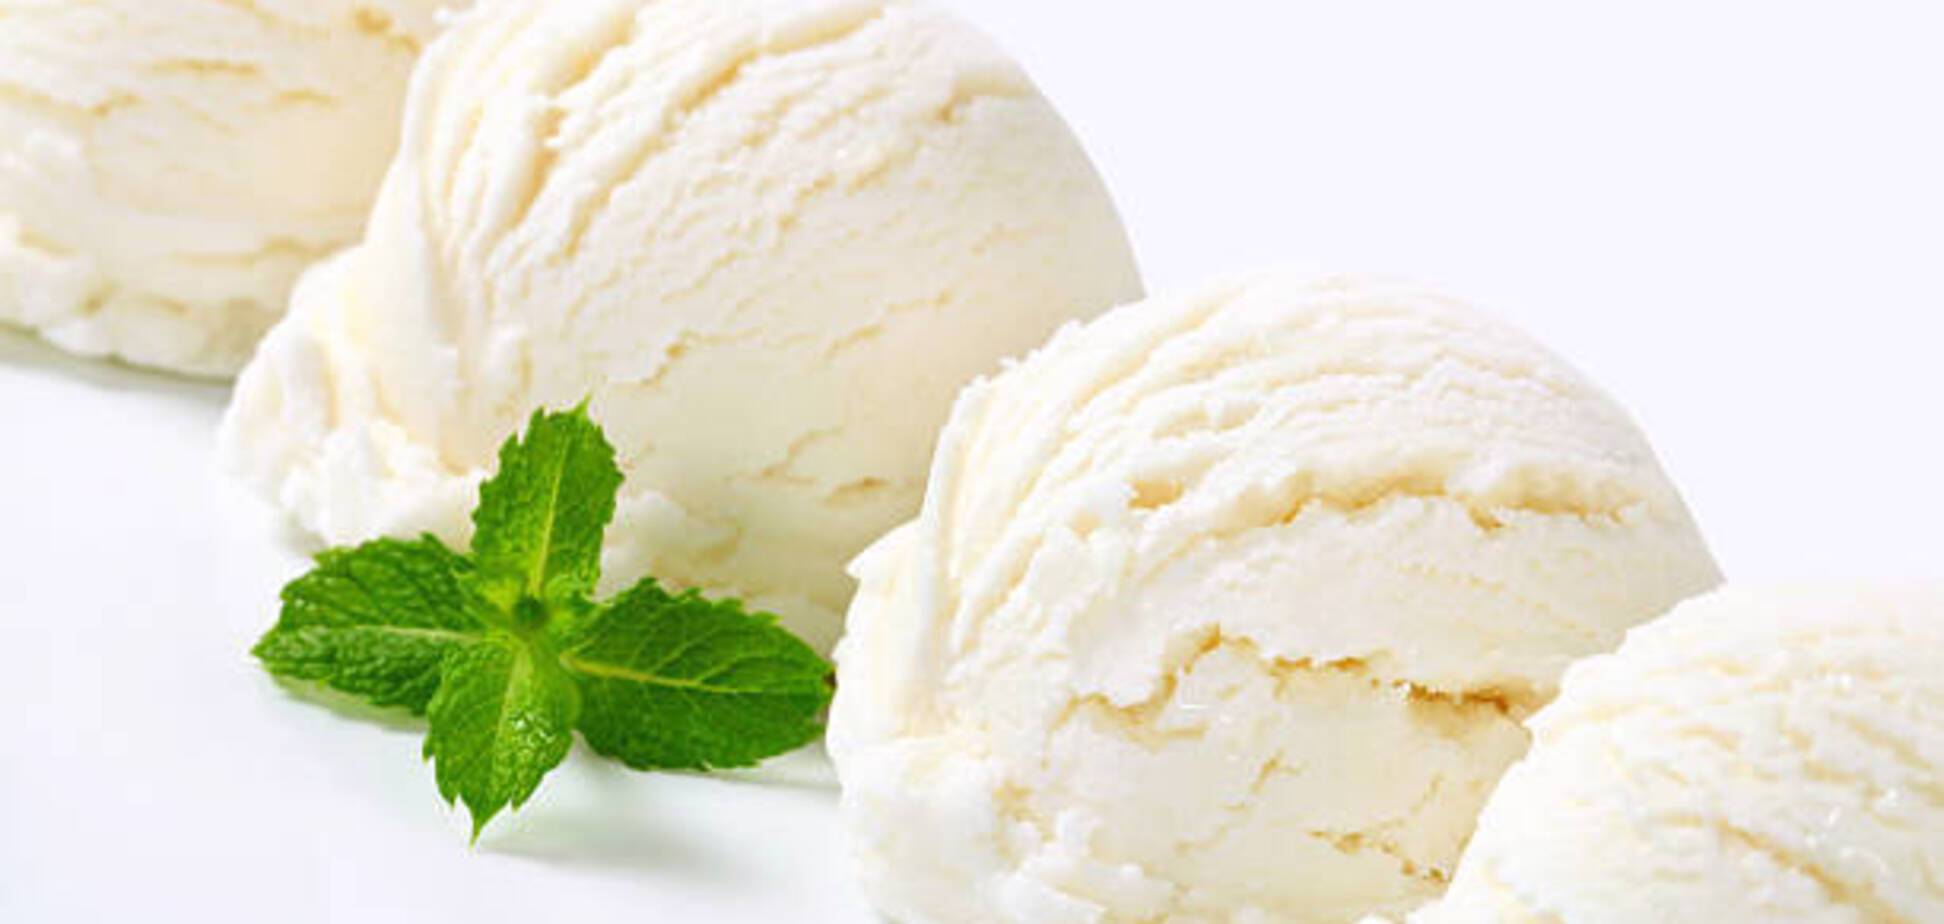 Мороженое пломбир родом из детства: понадобится два ингредиента